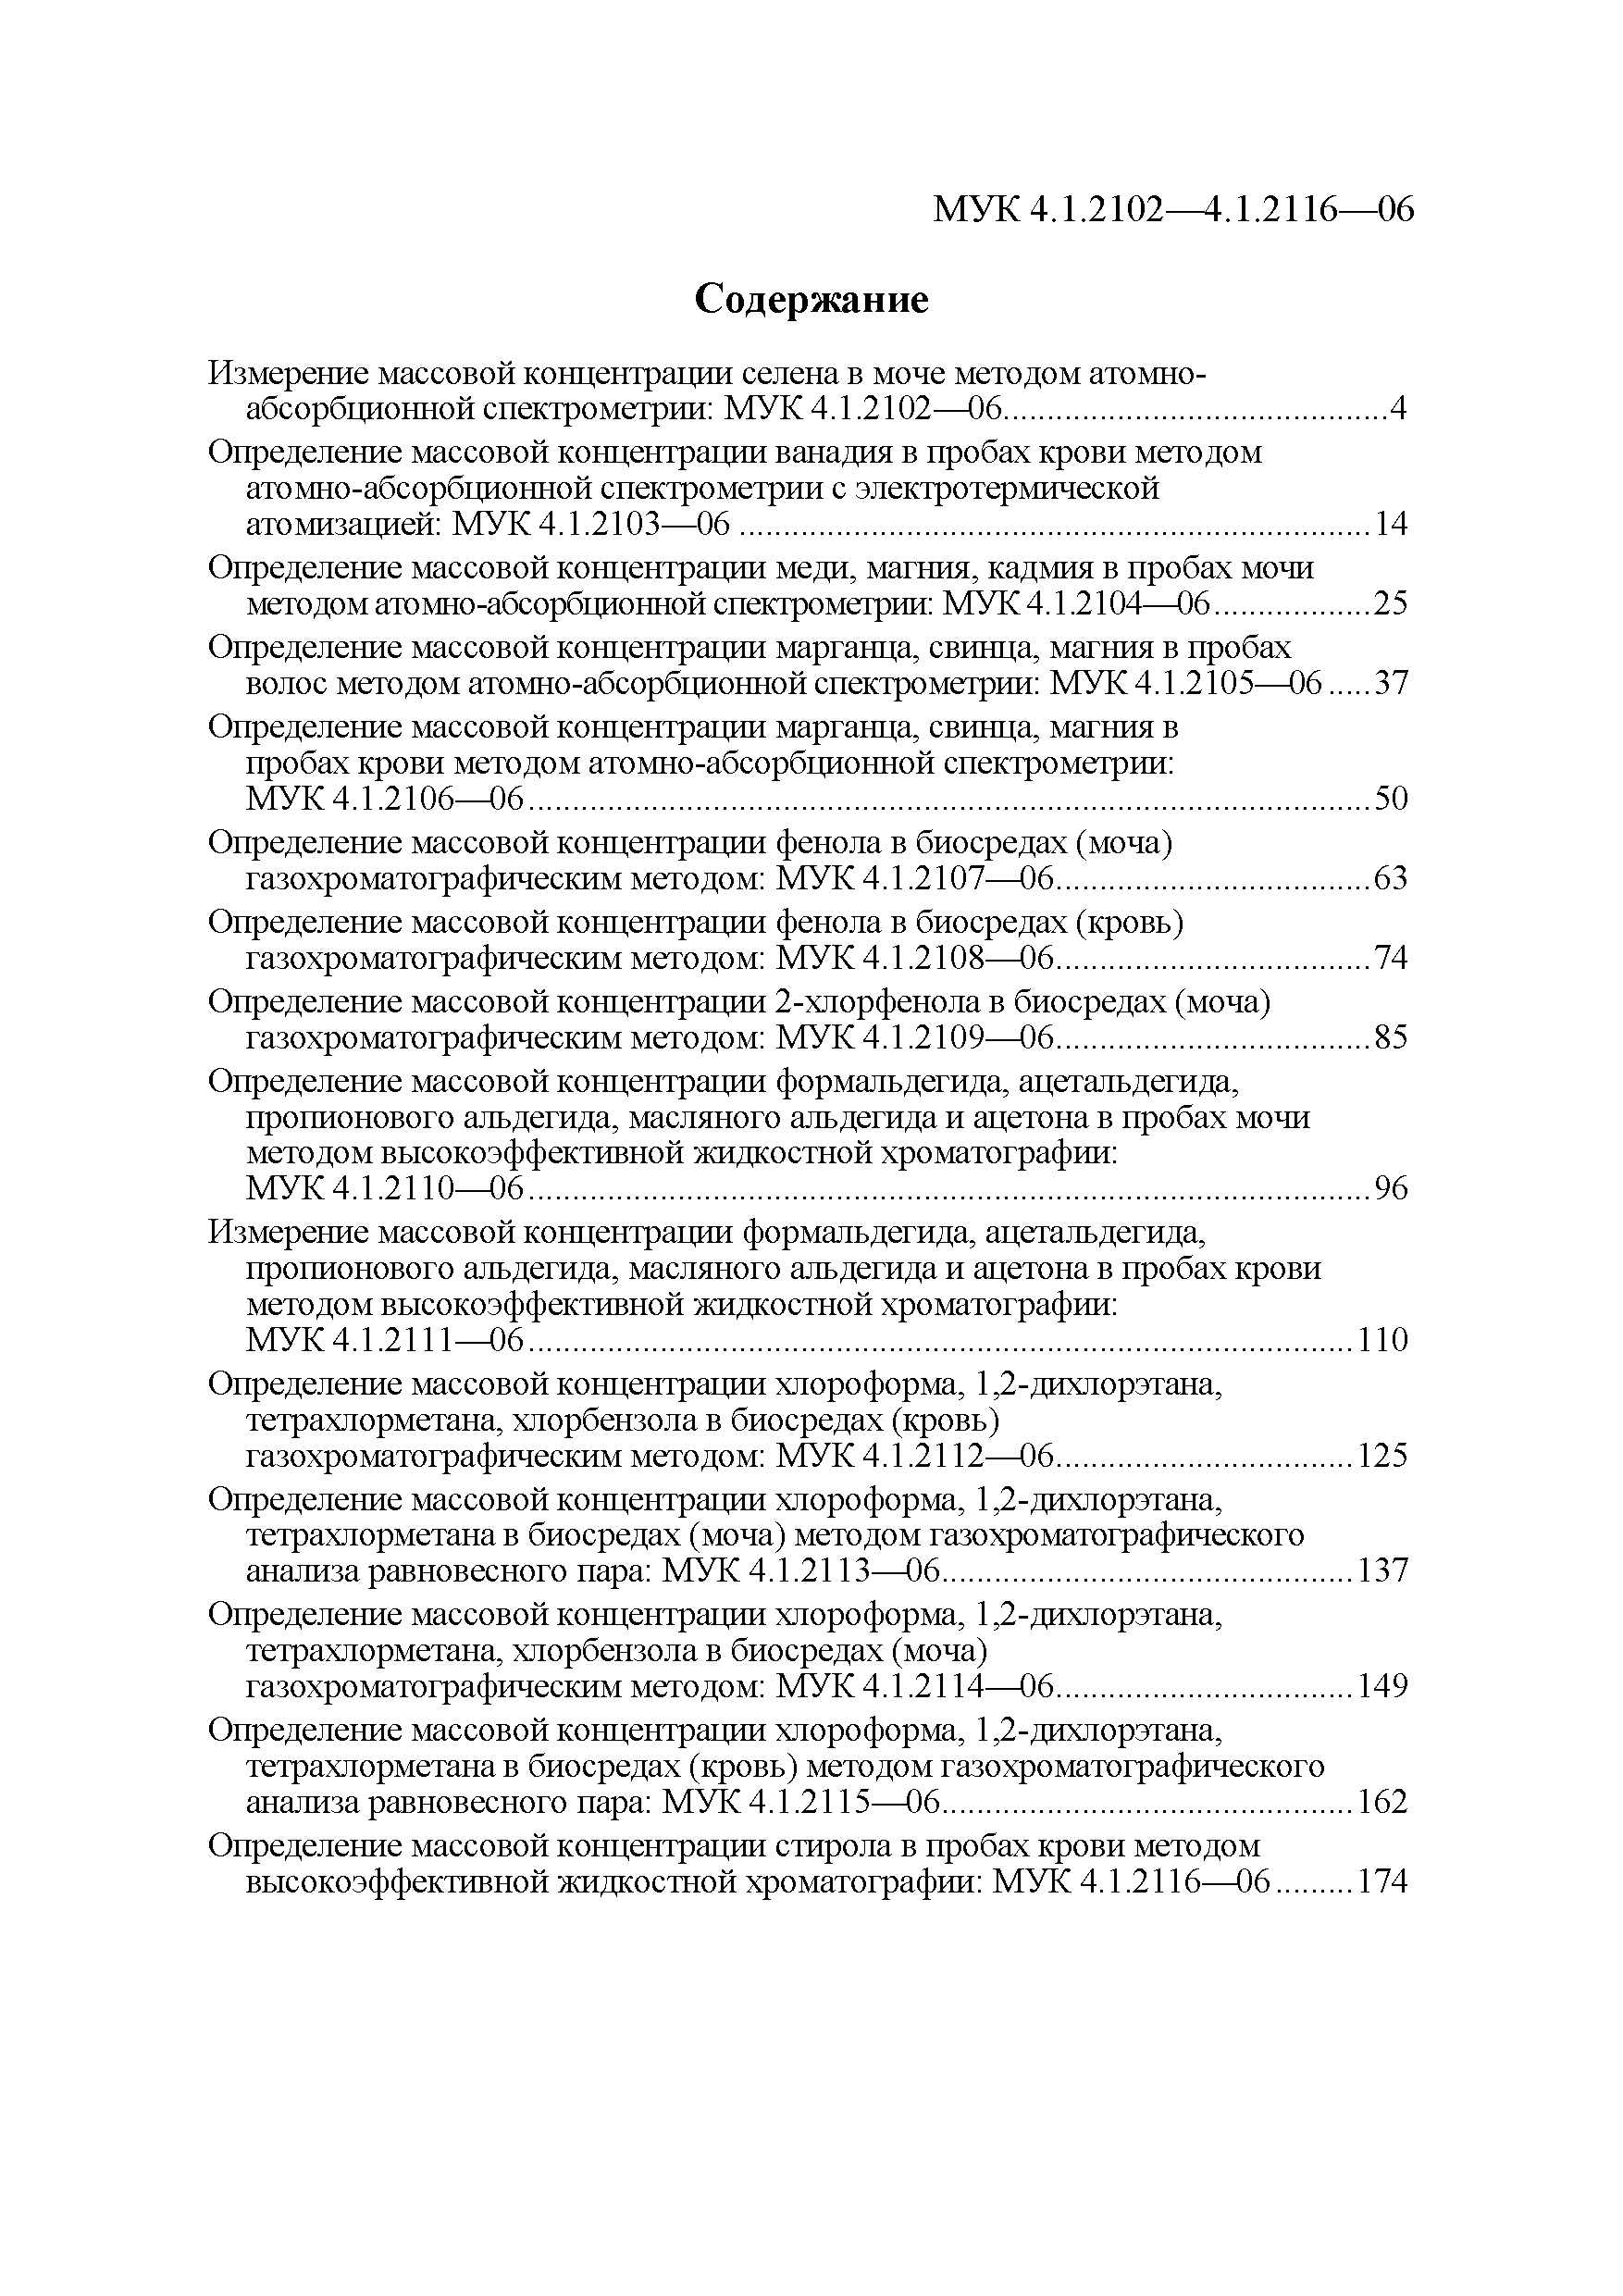 МУК 4.1.2104-06